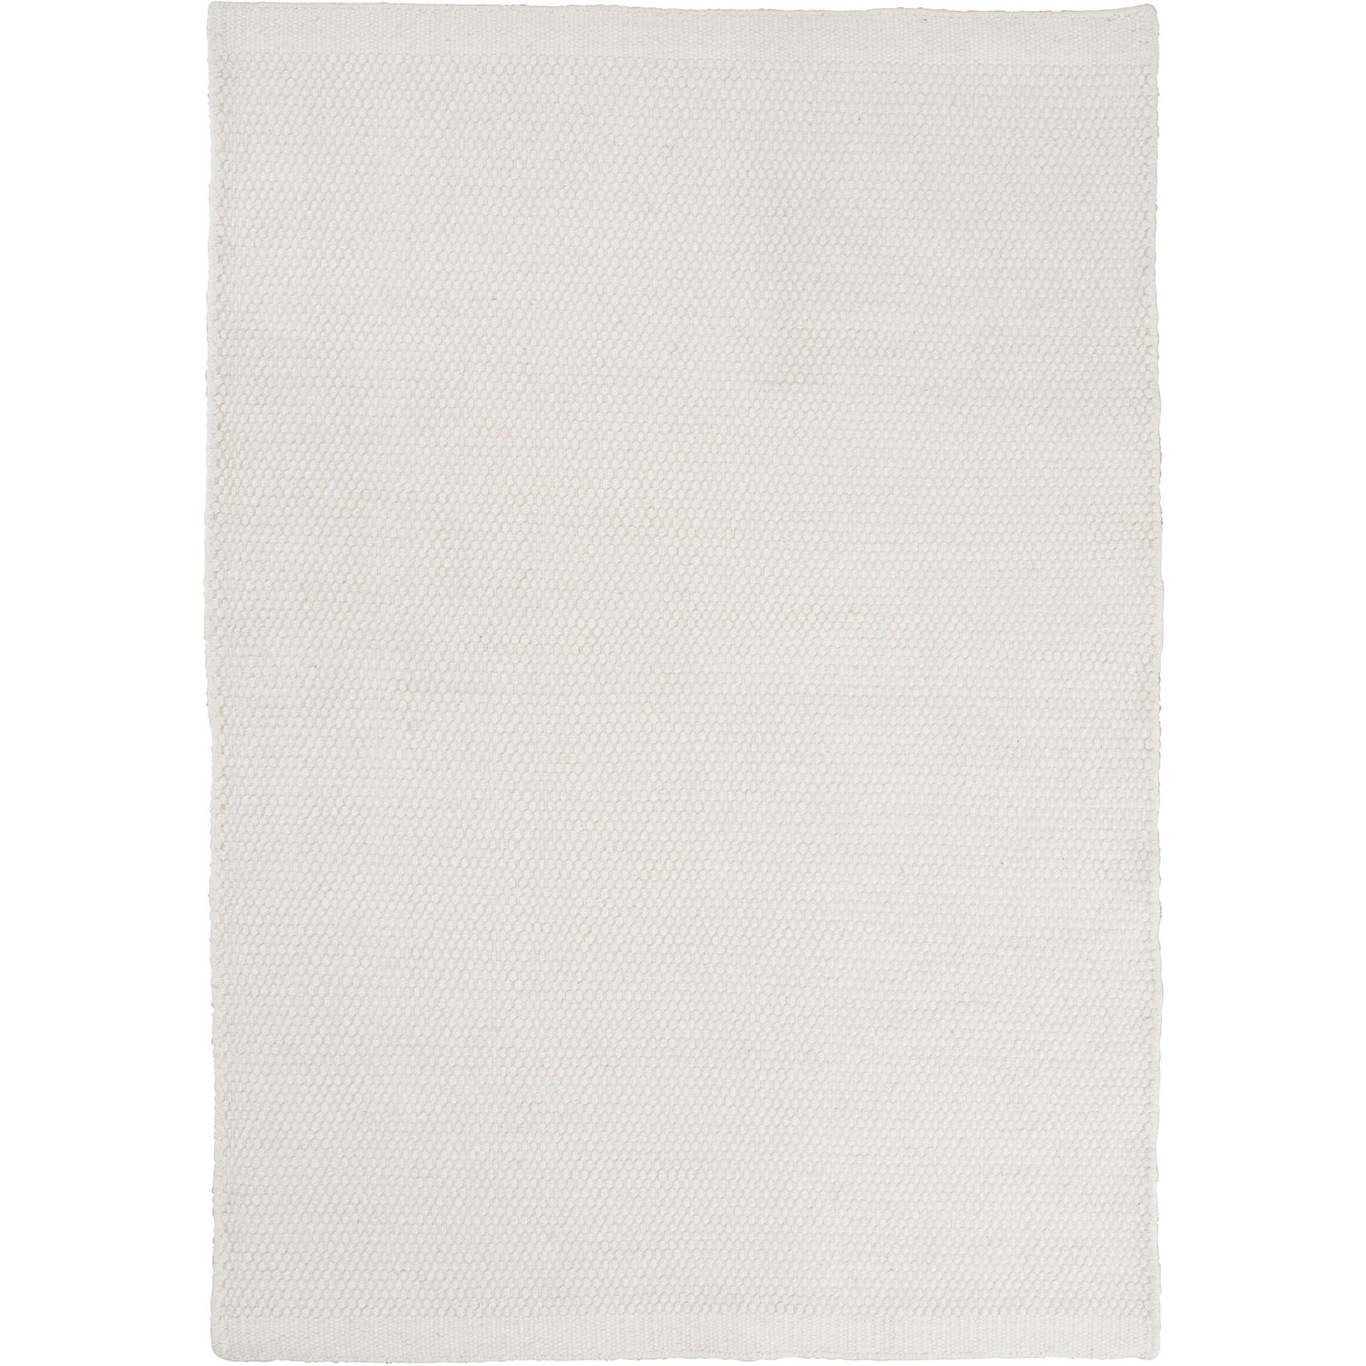 Asko Teppich Weiß, 300x400 cm